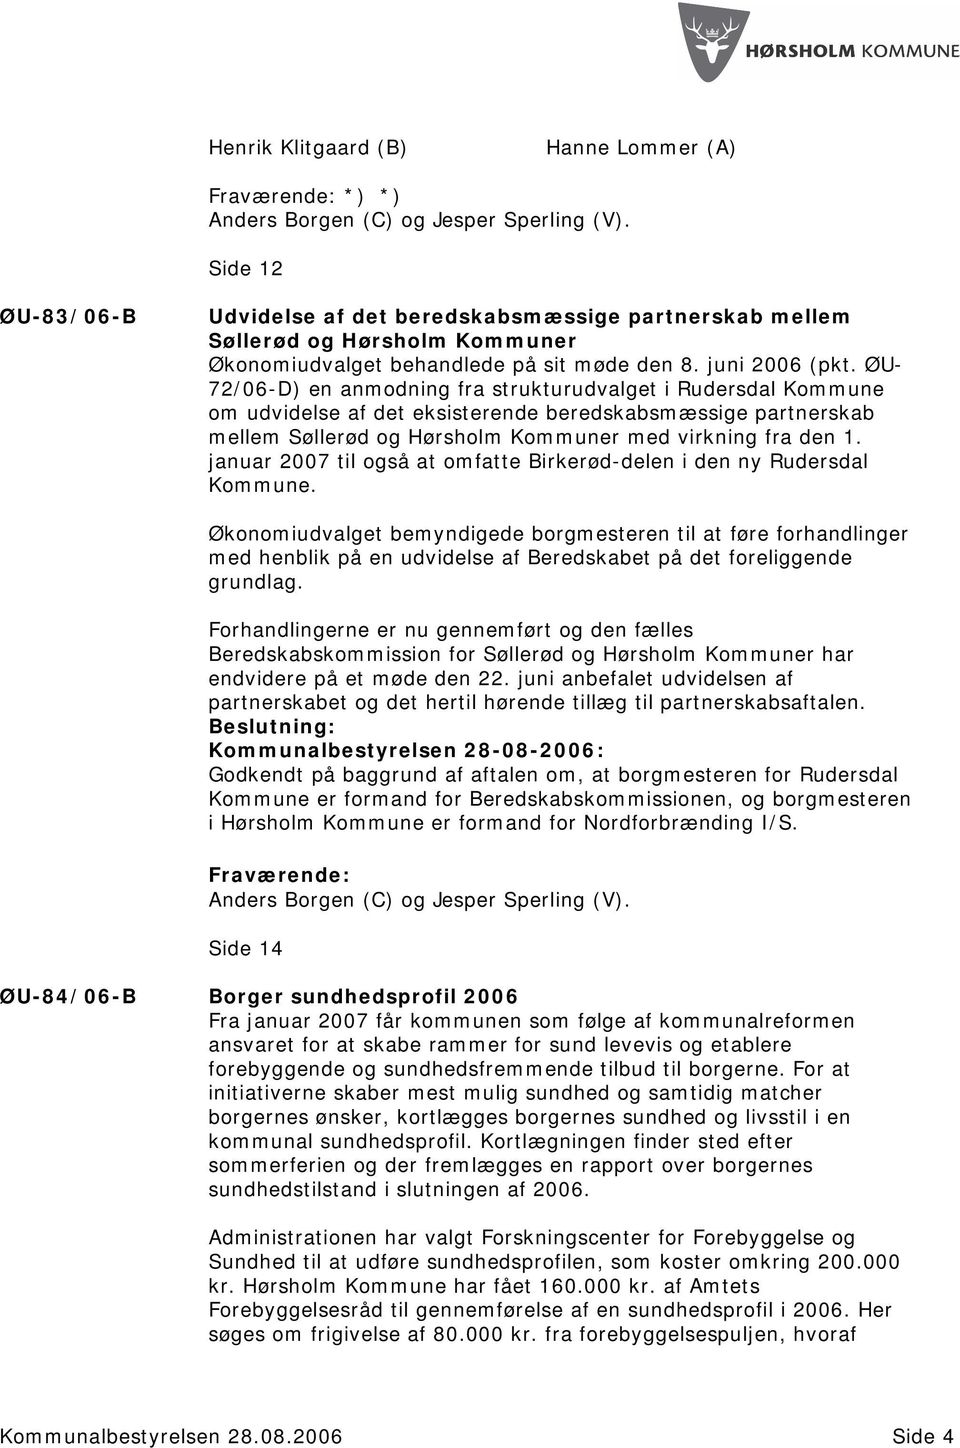 ØU- 72/06-D) en anmodning fra strukturudvalget i Rudersdal Kommune om udvidelse af det eksisterende beredskabsmæssige partnerskab mellem Søllerød og Hørsholm Kommuner med virkning fra den 1.